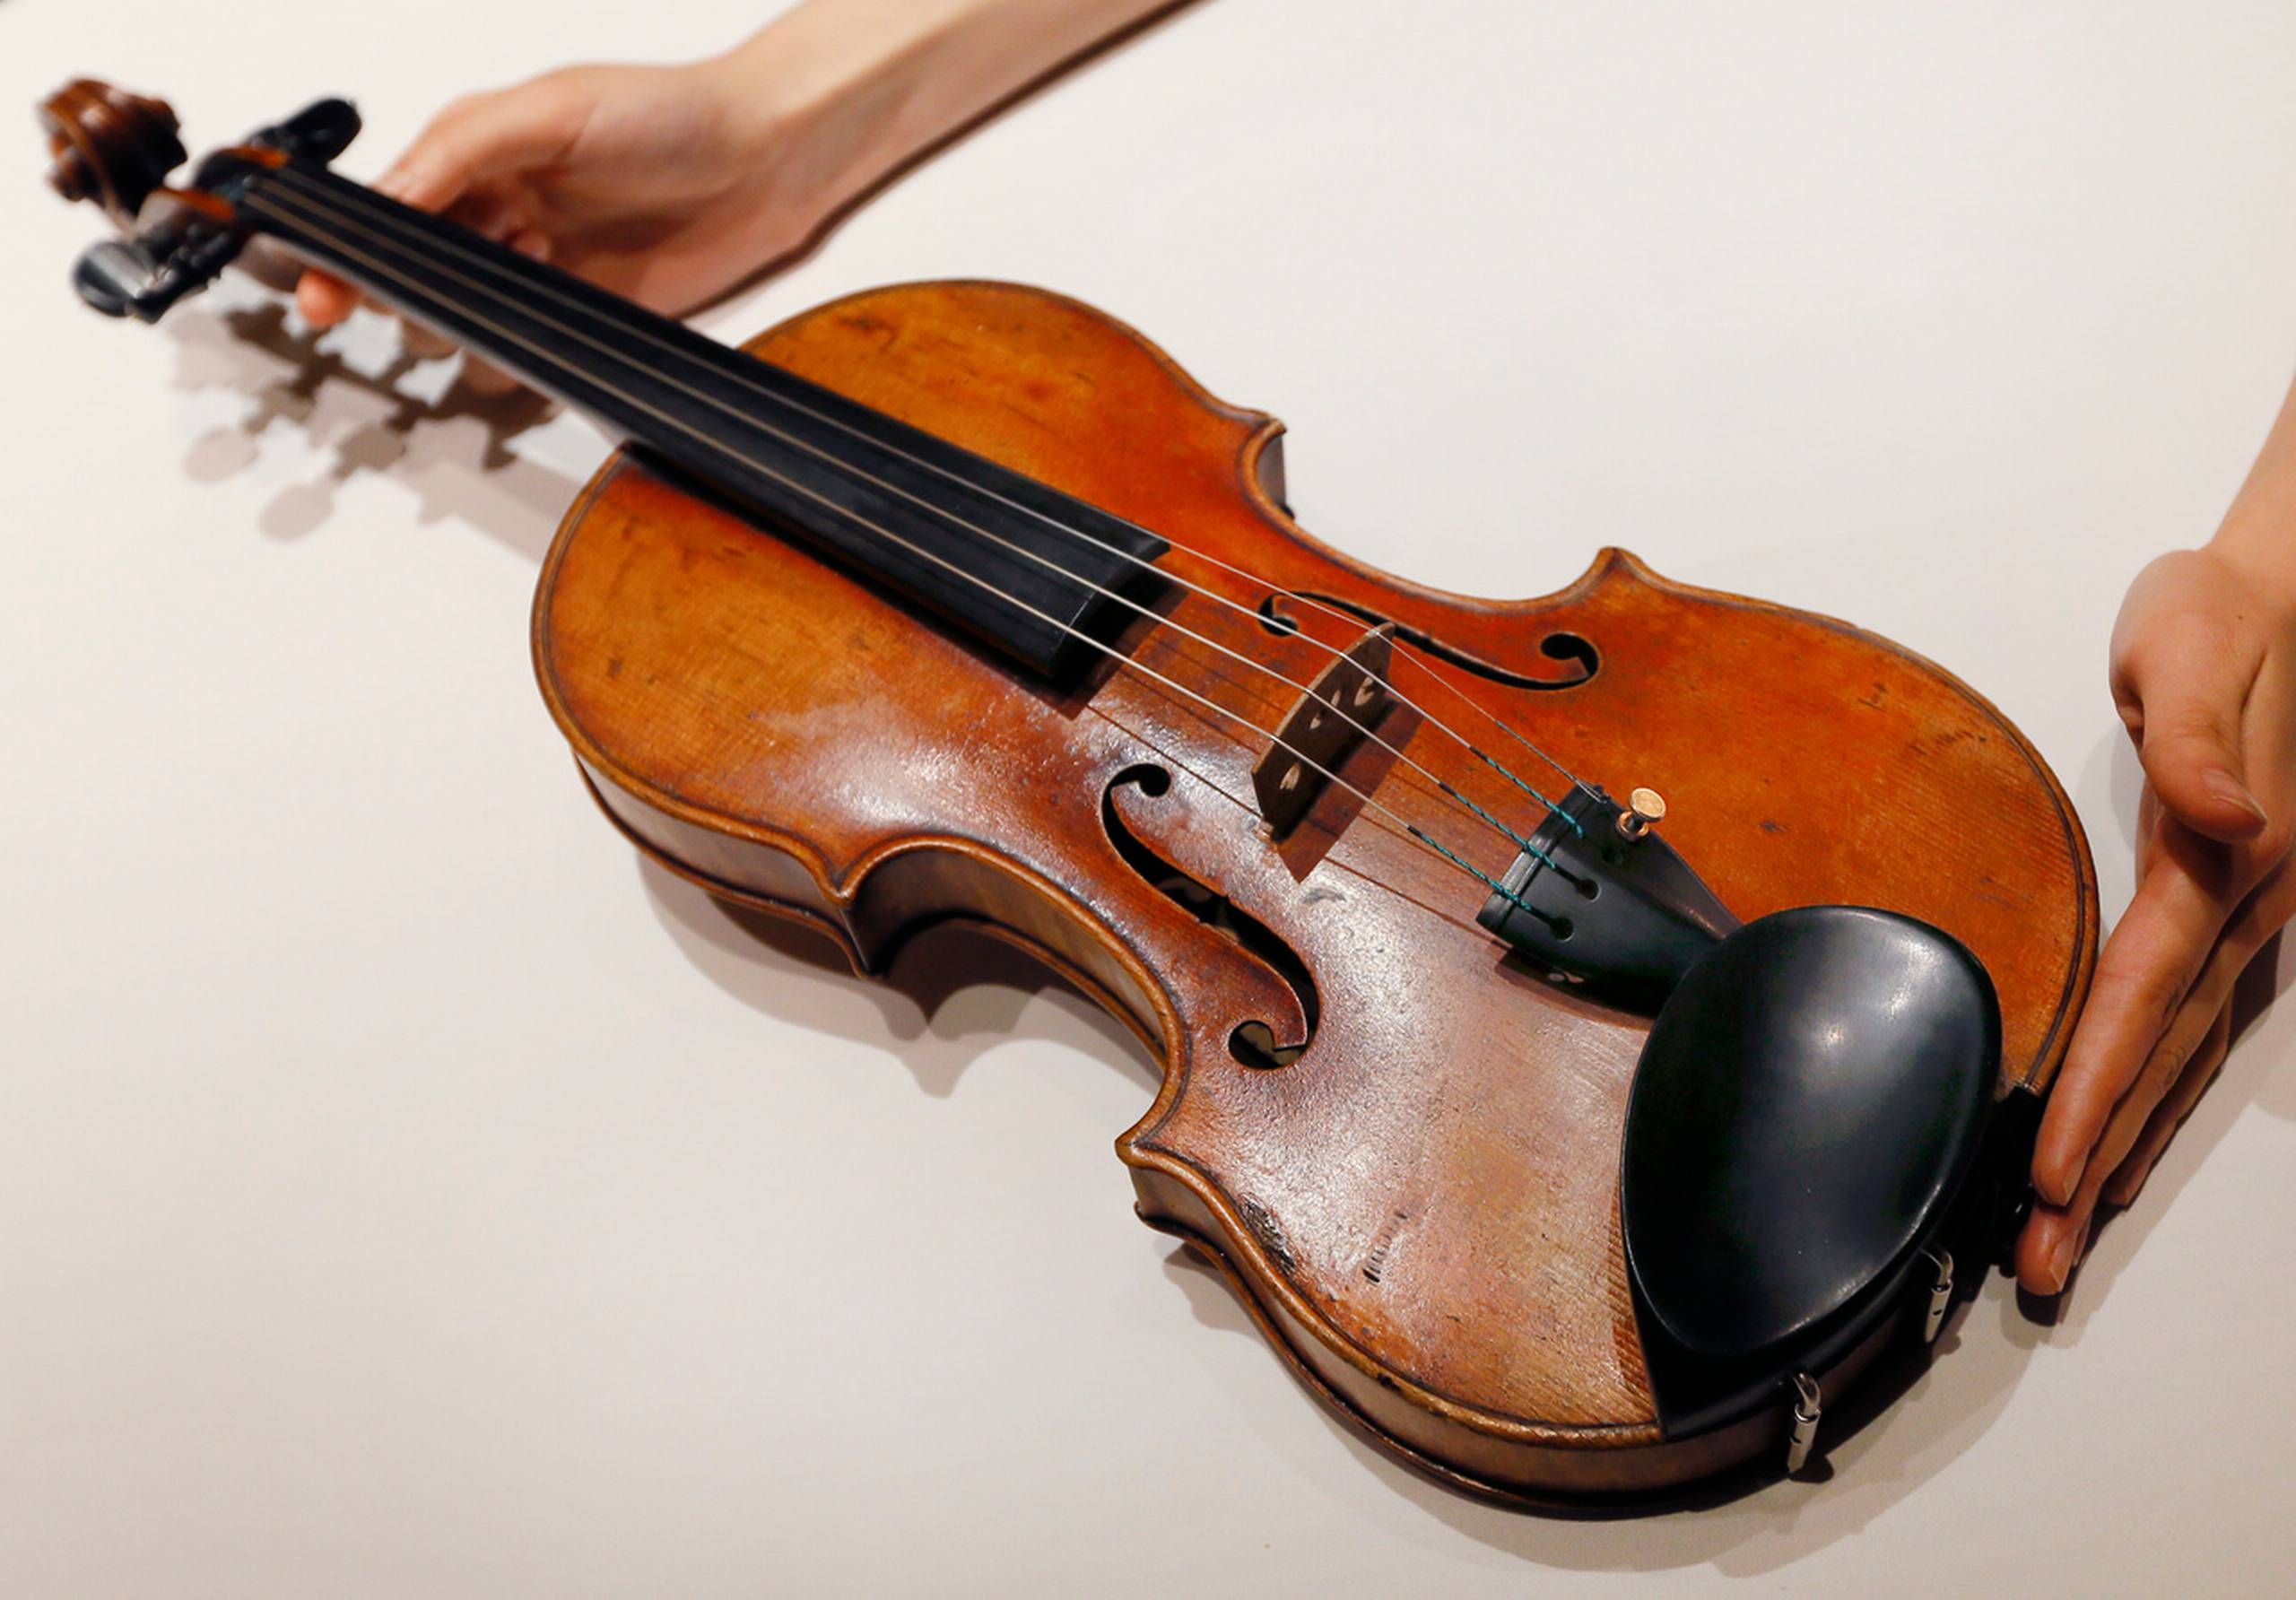 Tyskland vil forbyde af Stradivarius-violiner